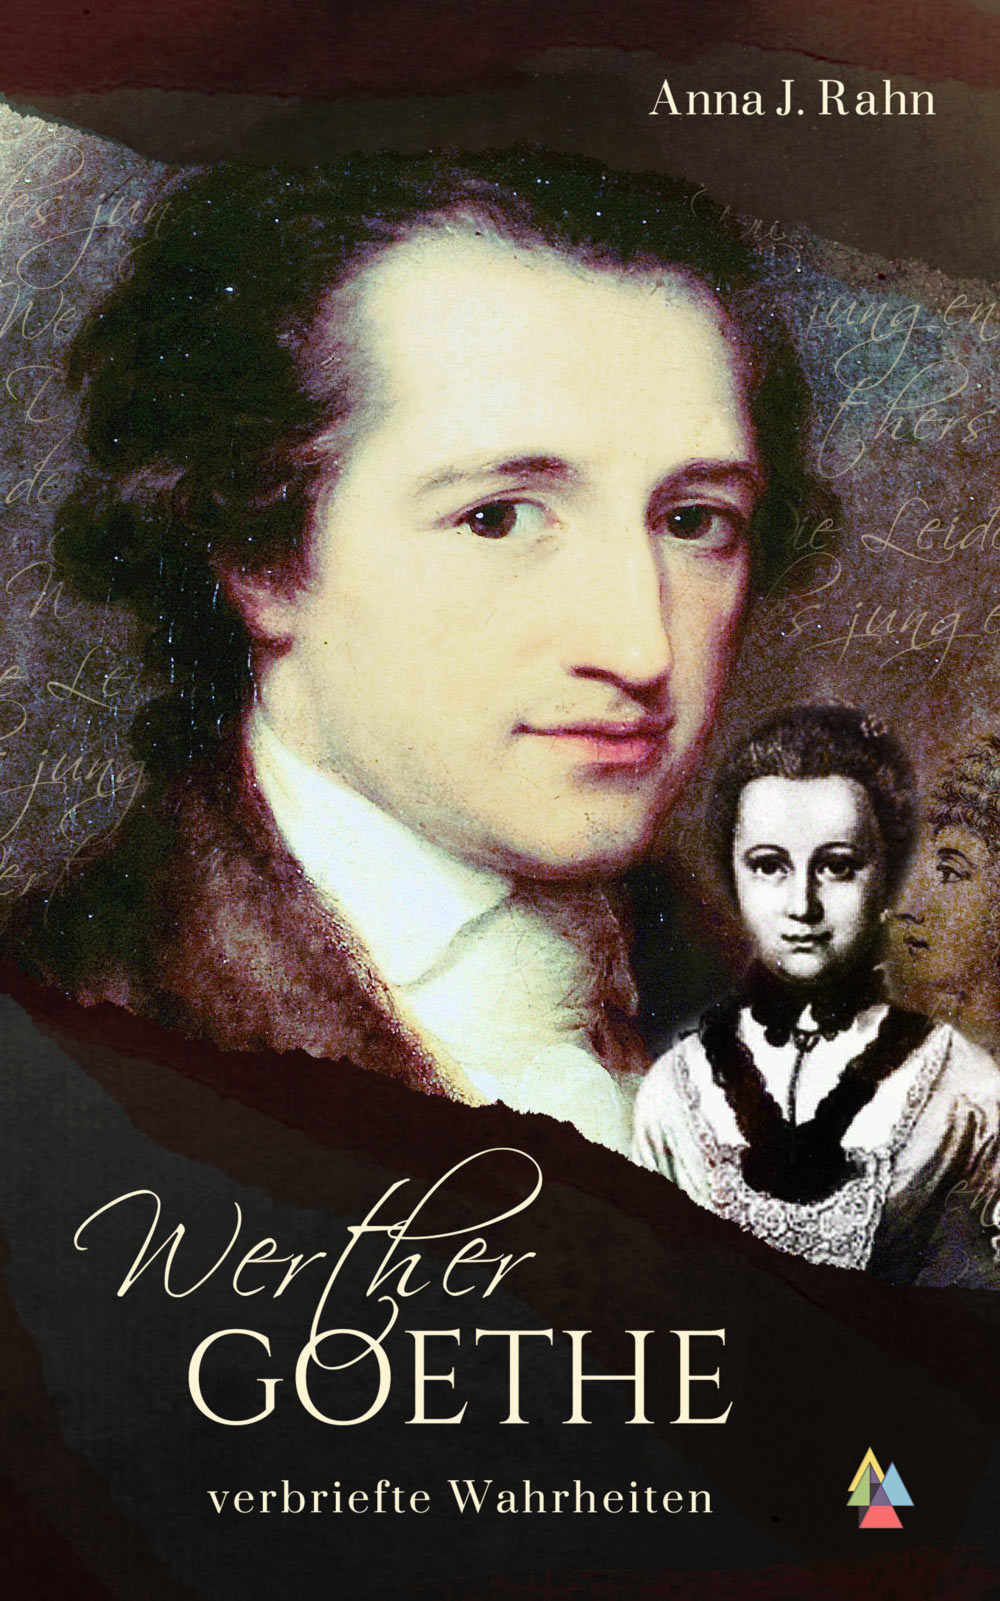 Werther Goethe - verbriefte Wahrheiten von Anna J. Rahn Jalara Verlag ISBN: ... - werther-goethe-anna-j.-rahn-verbriefte-wahrheiten-jalara-verlag-elisa-demonki-978-3-945482-33-91111